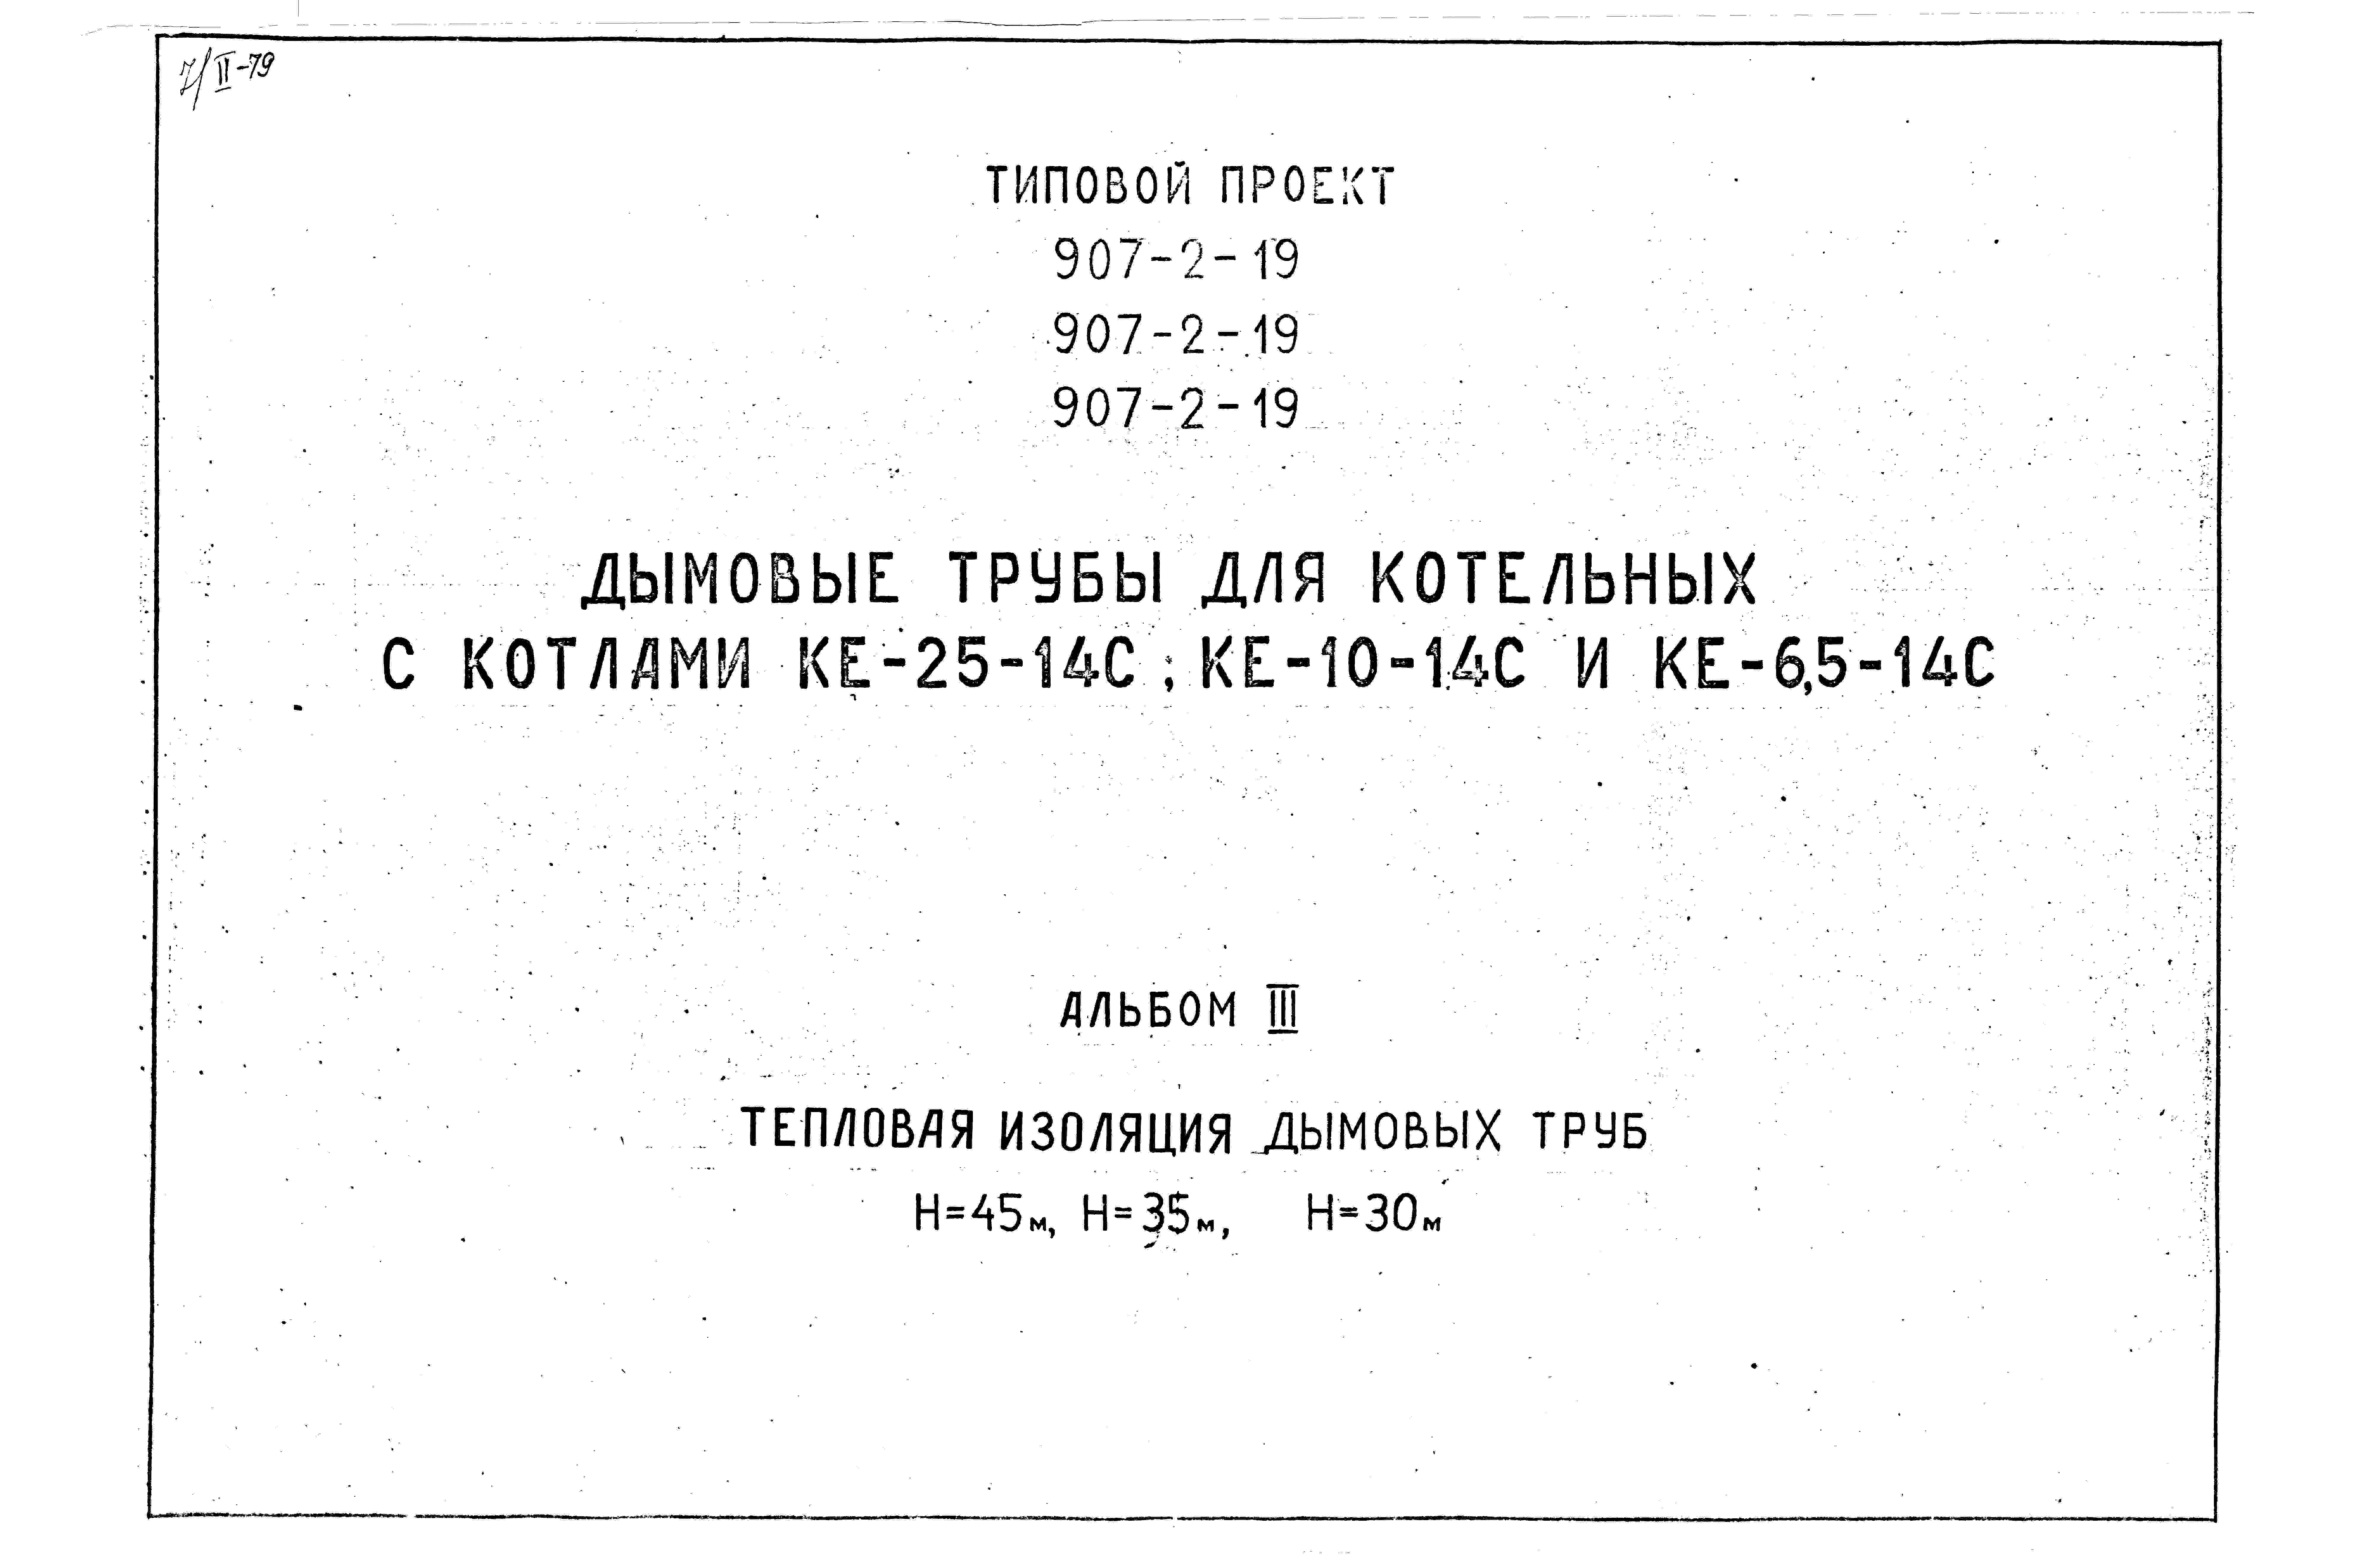 Состав альбома Типовой проект 907-2-19Альбом 3 Тепловая изоляция дымовых труб Н=45 м; Н=35 м; Н=30 м